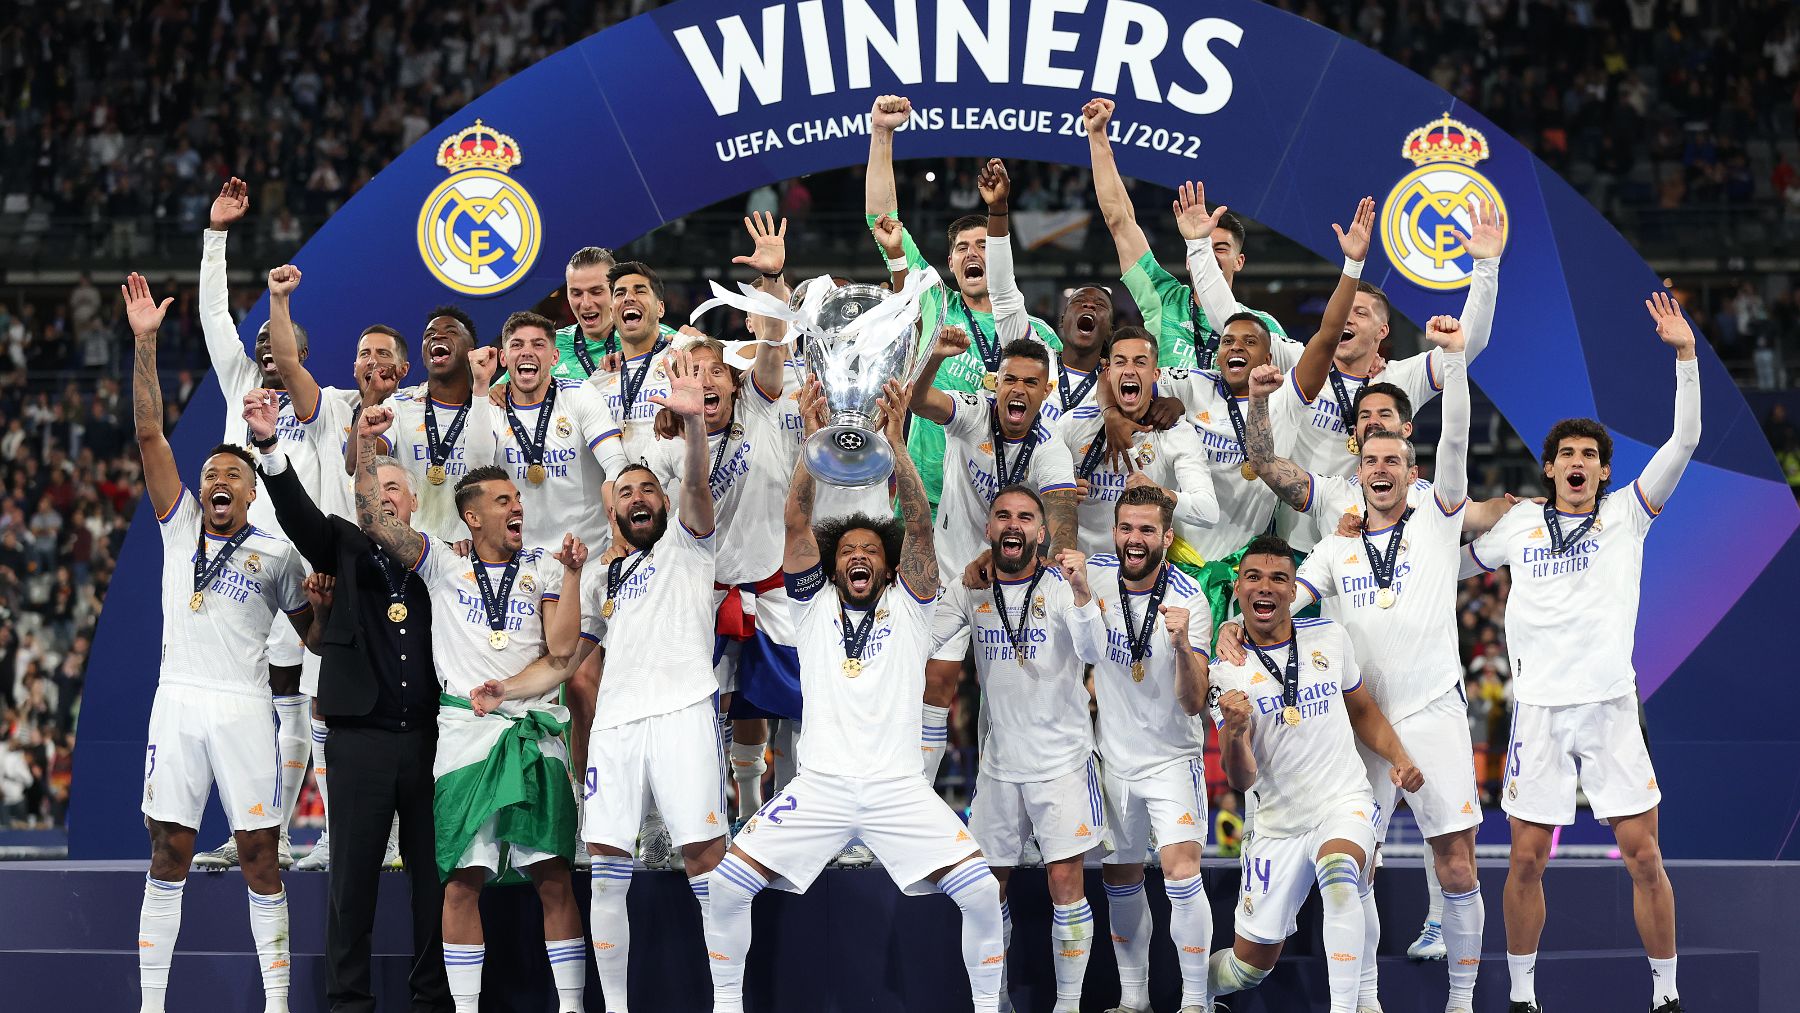 El Gordo de la Lotería predice la Decimoquinta Champions del Real Madrid